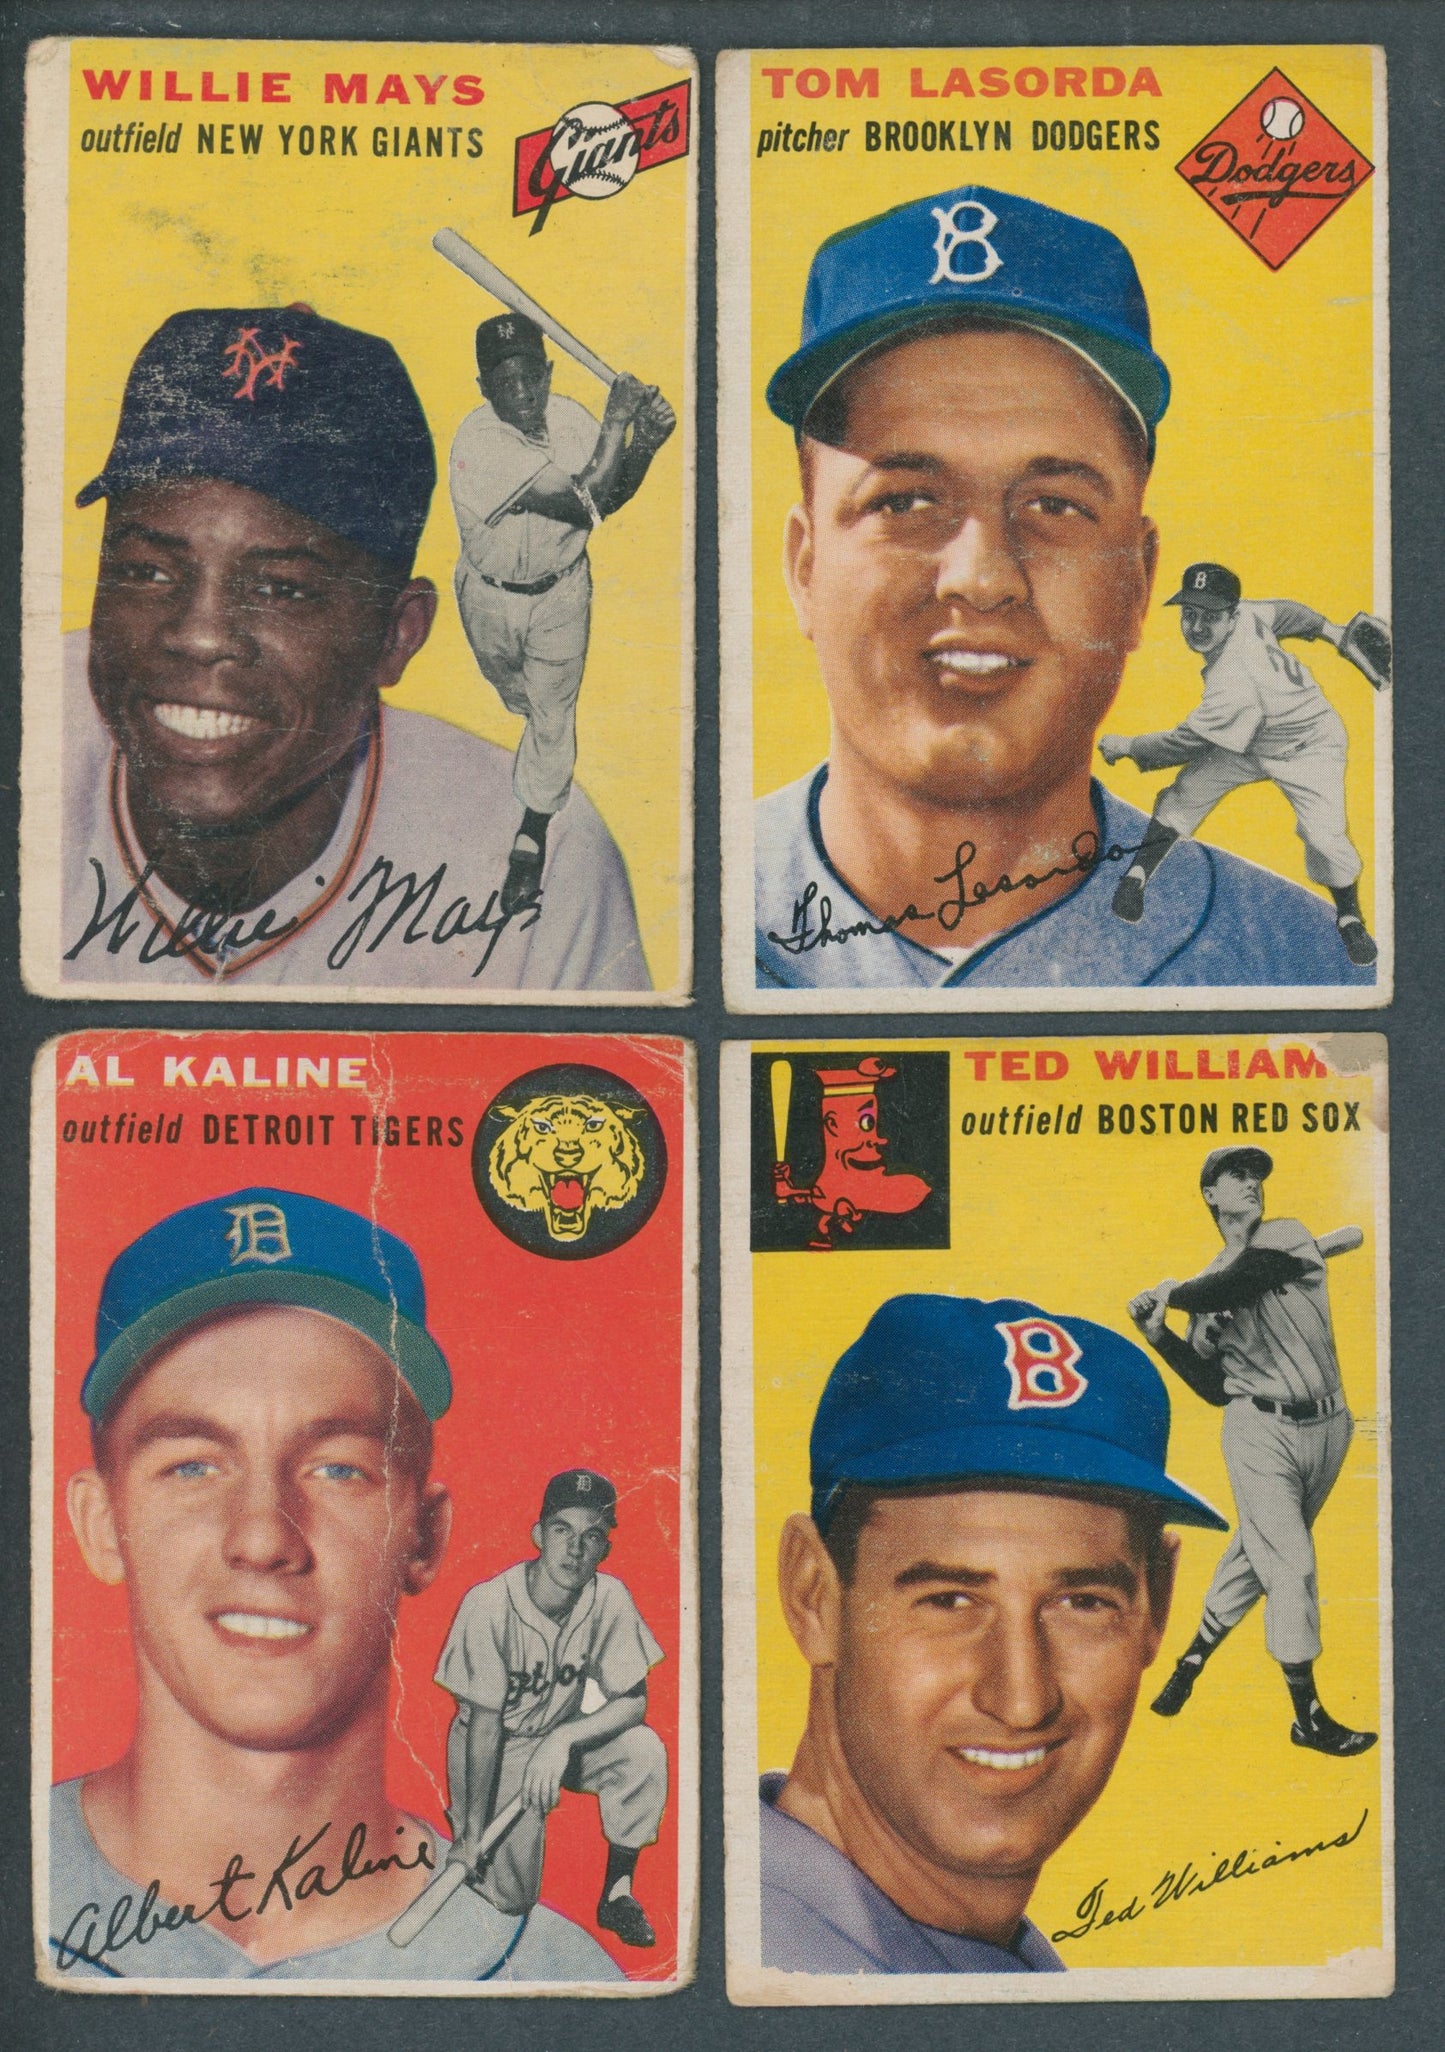 1954 Topps Baseball Near Set (249/250) PR VG